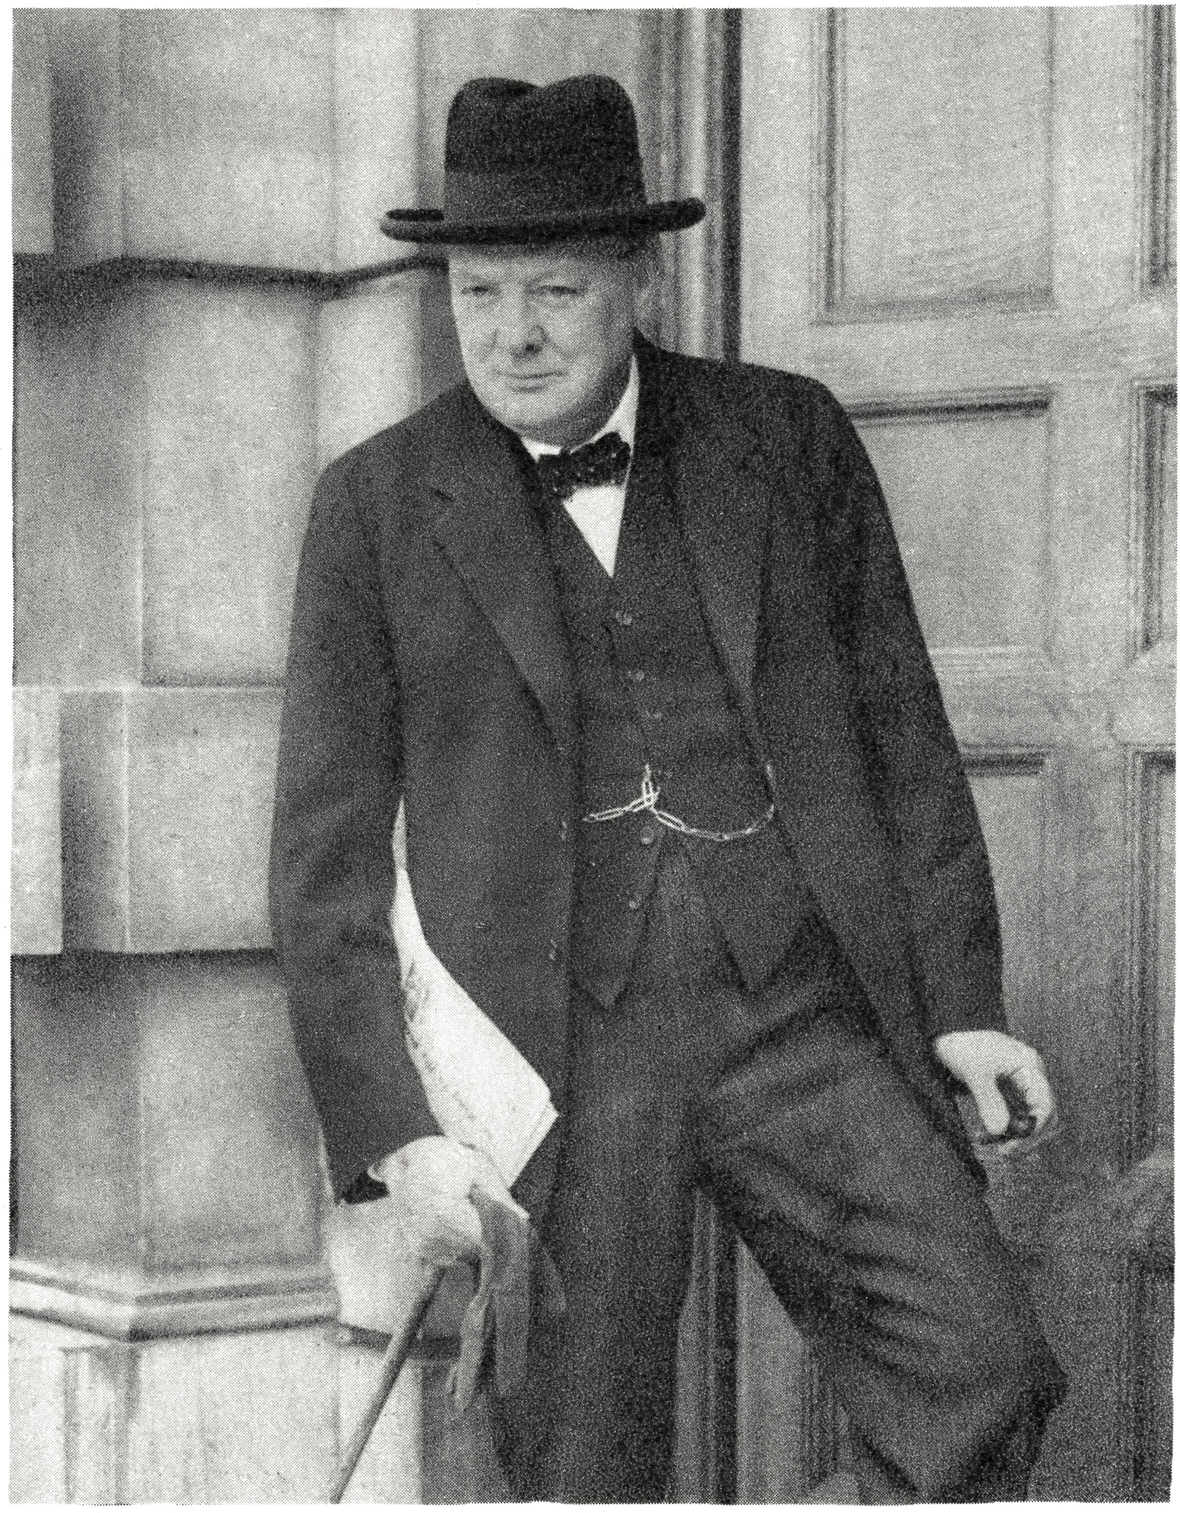 Winston Churchill, britischer Politiker, lebte von 1874 bis 1965. Er war zweimal Regierungschef des Vereinigten Königreichs Großbritannien und Nordirland. Er führte Großbritannien als Premierminister durch den Zweiten Weltkrieg. Zudem hat er historische und politische Bücher geschrieben. 1953 erhielt er den Nobelpreis für Literatur. 